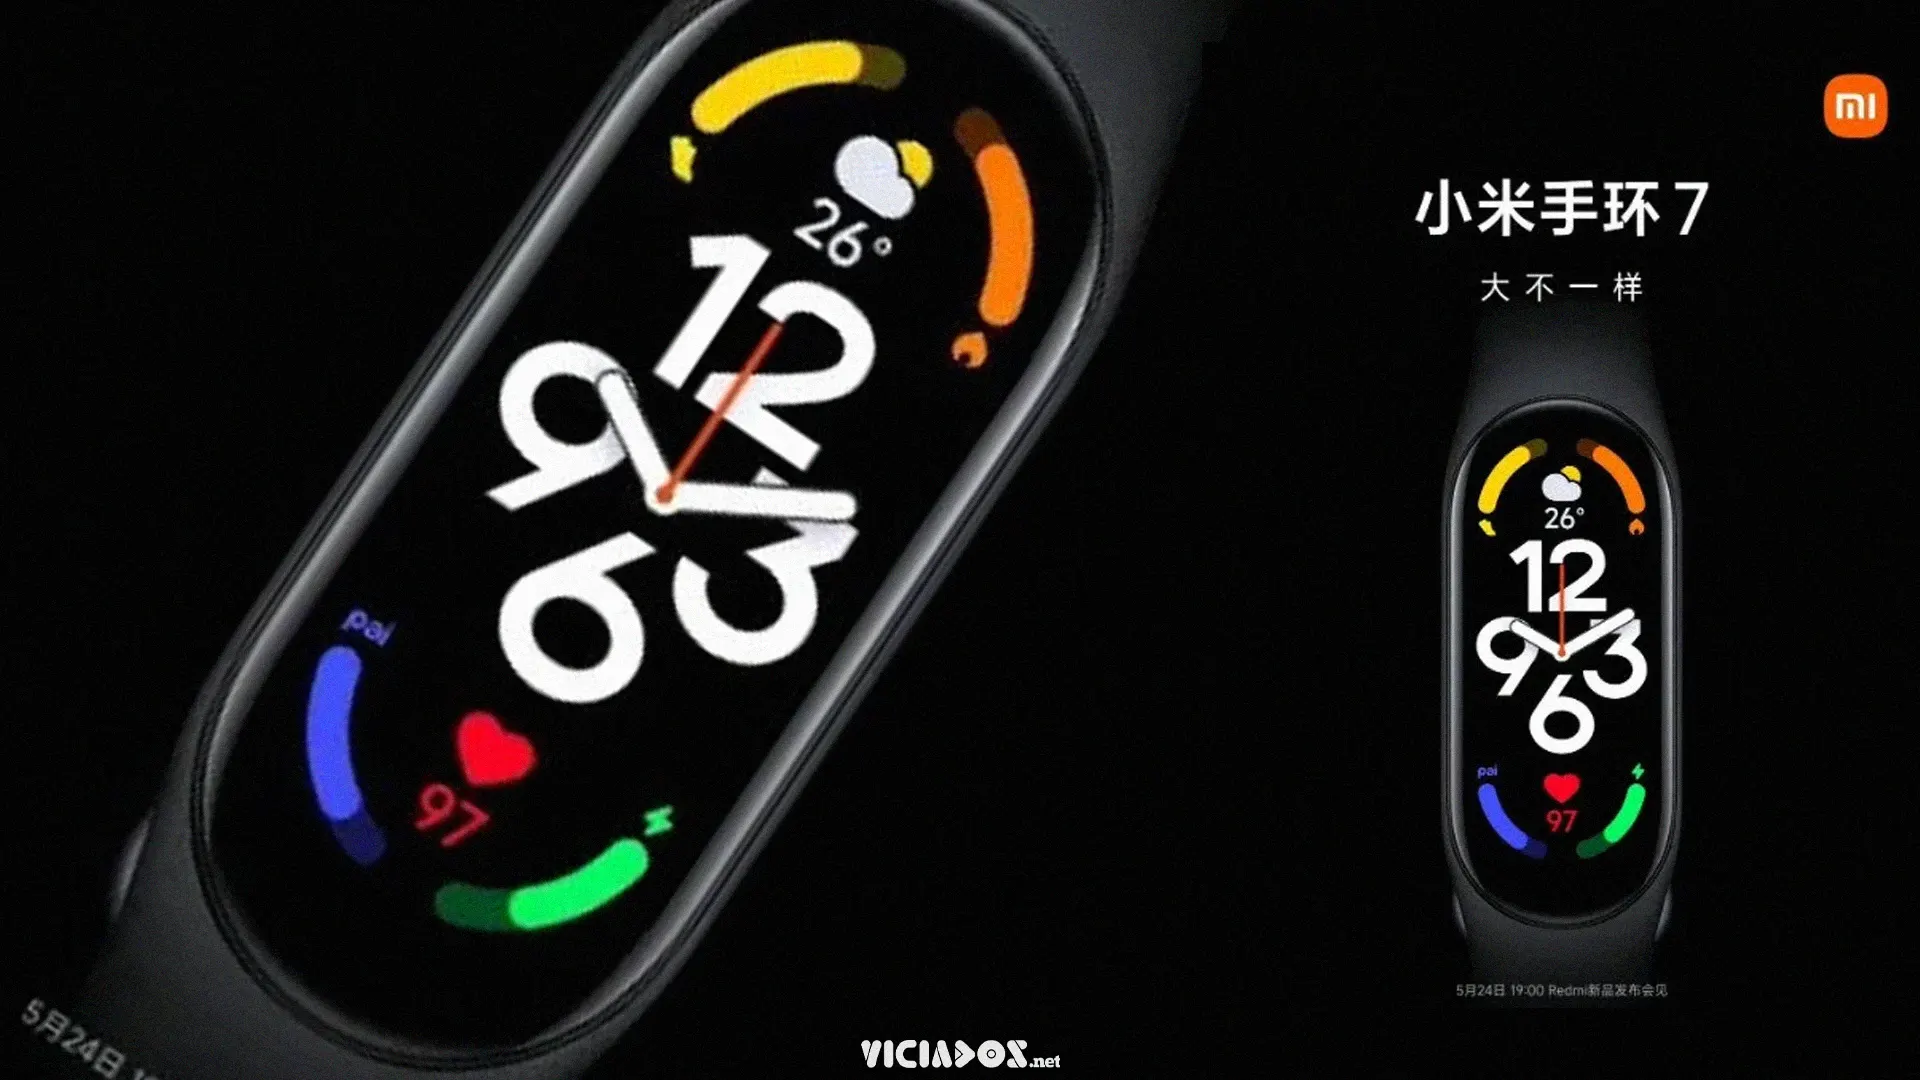 Xiaomi revela a Mi Band 7 em vídeo; Saiba as primeiras informações oficiais! 2023 Viciados